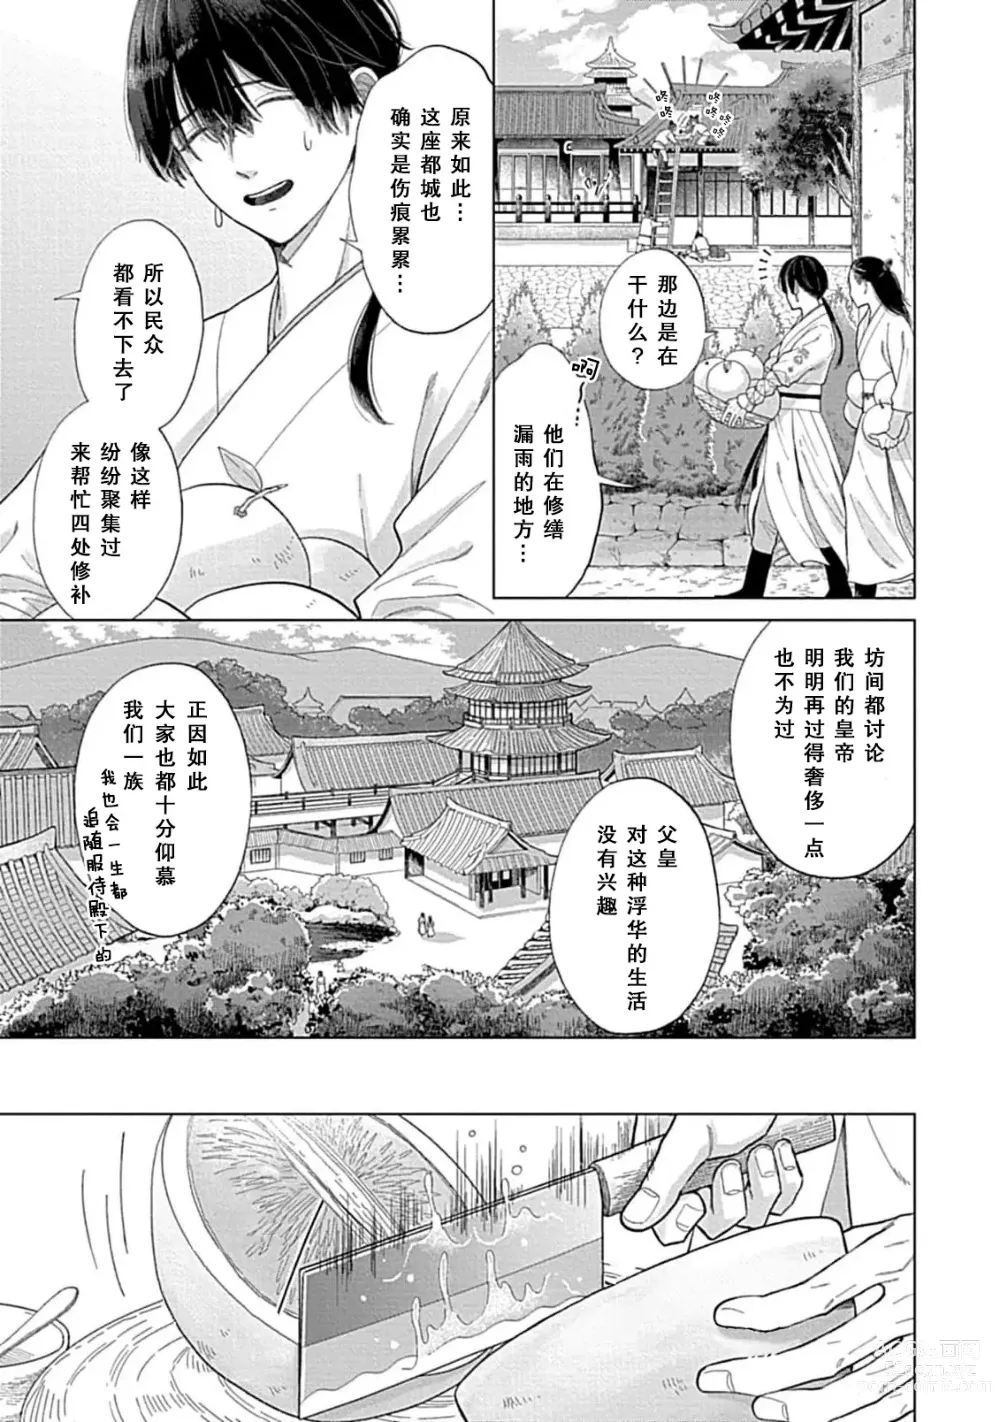 Page 7 of manga 花嫁的堇青石~篡位的狮子王和纯洁的皇子~ 1